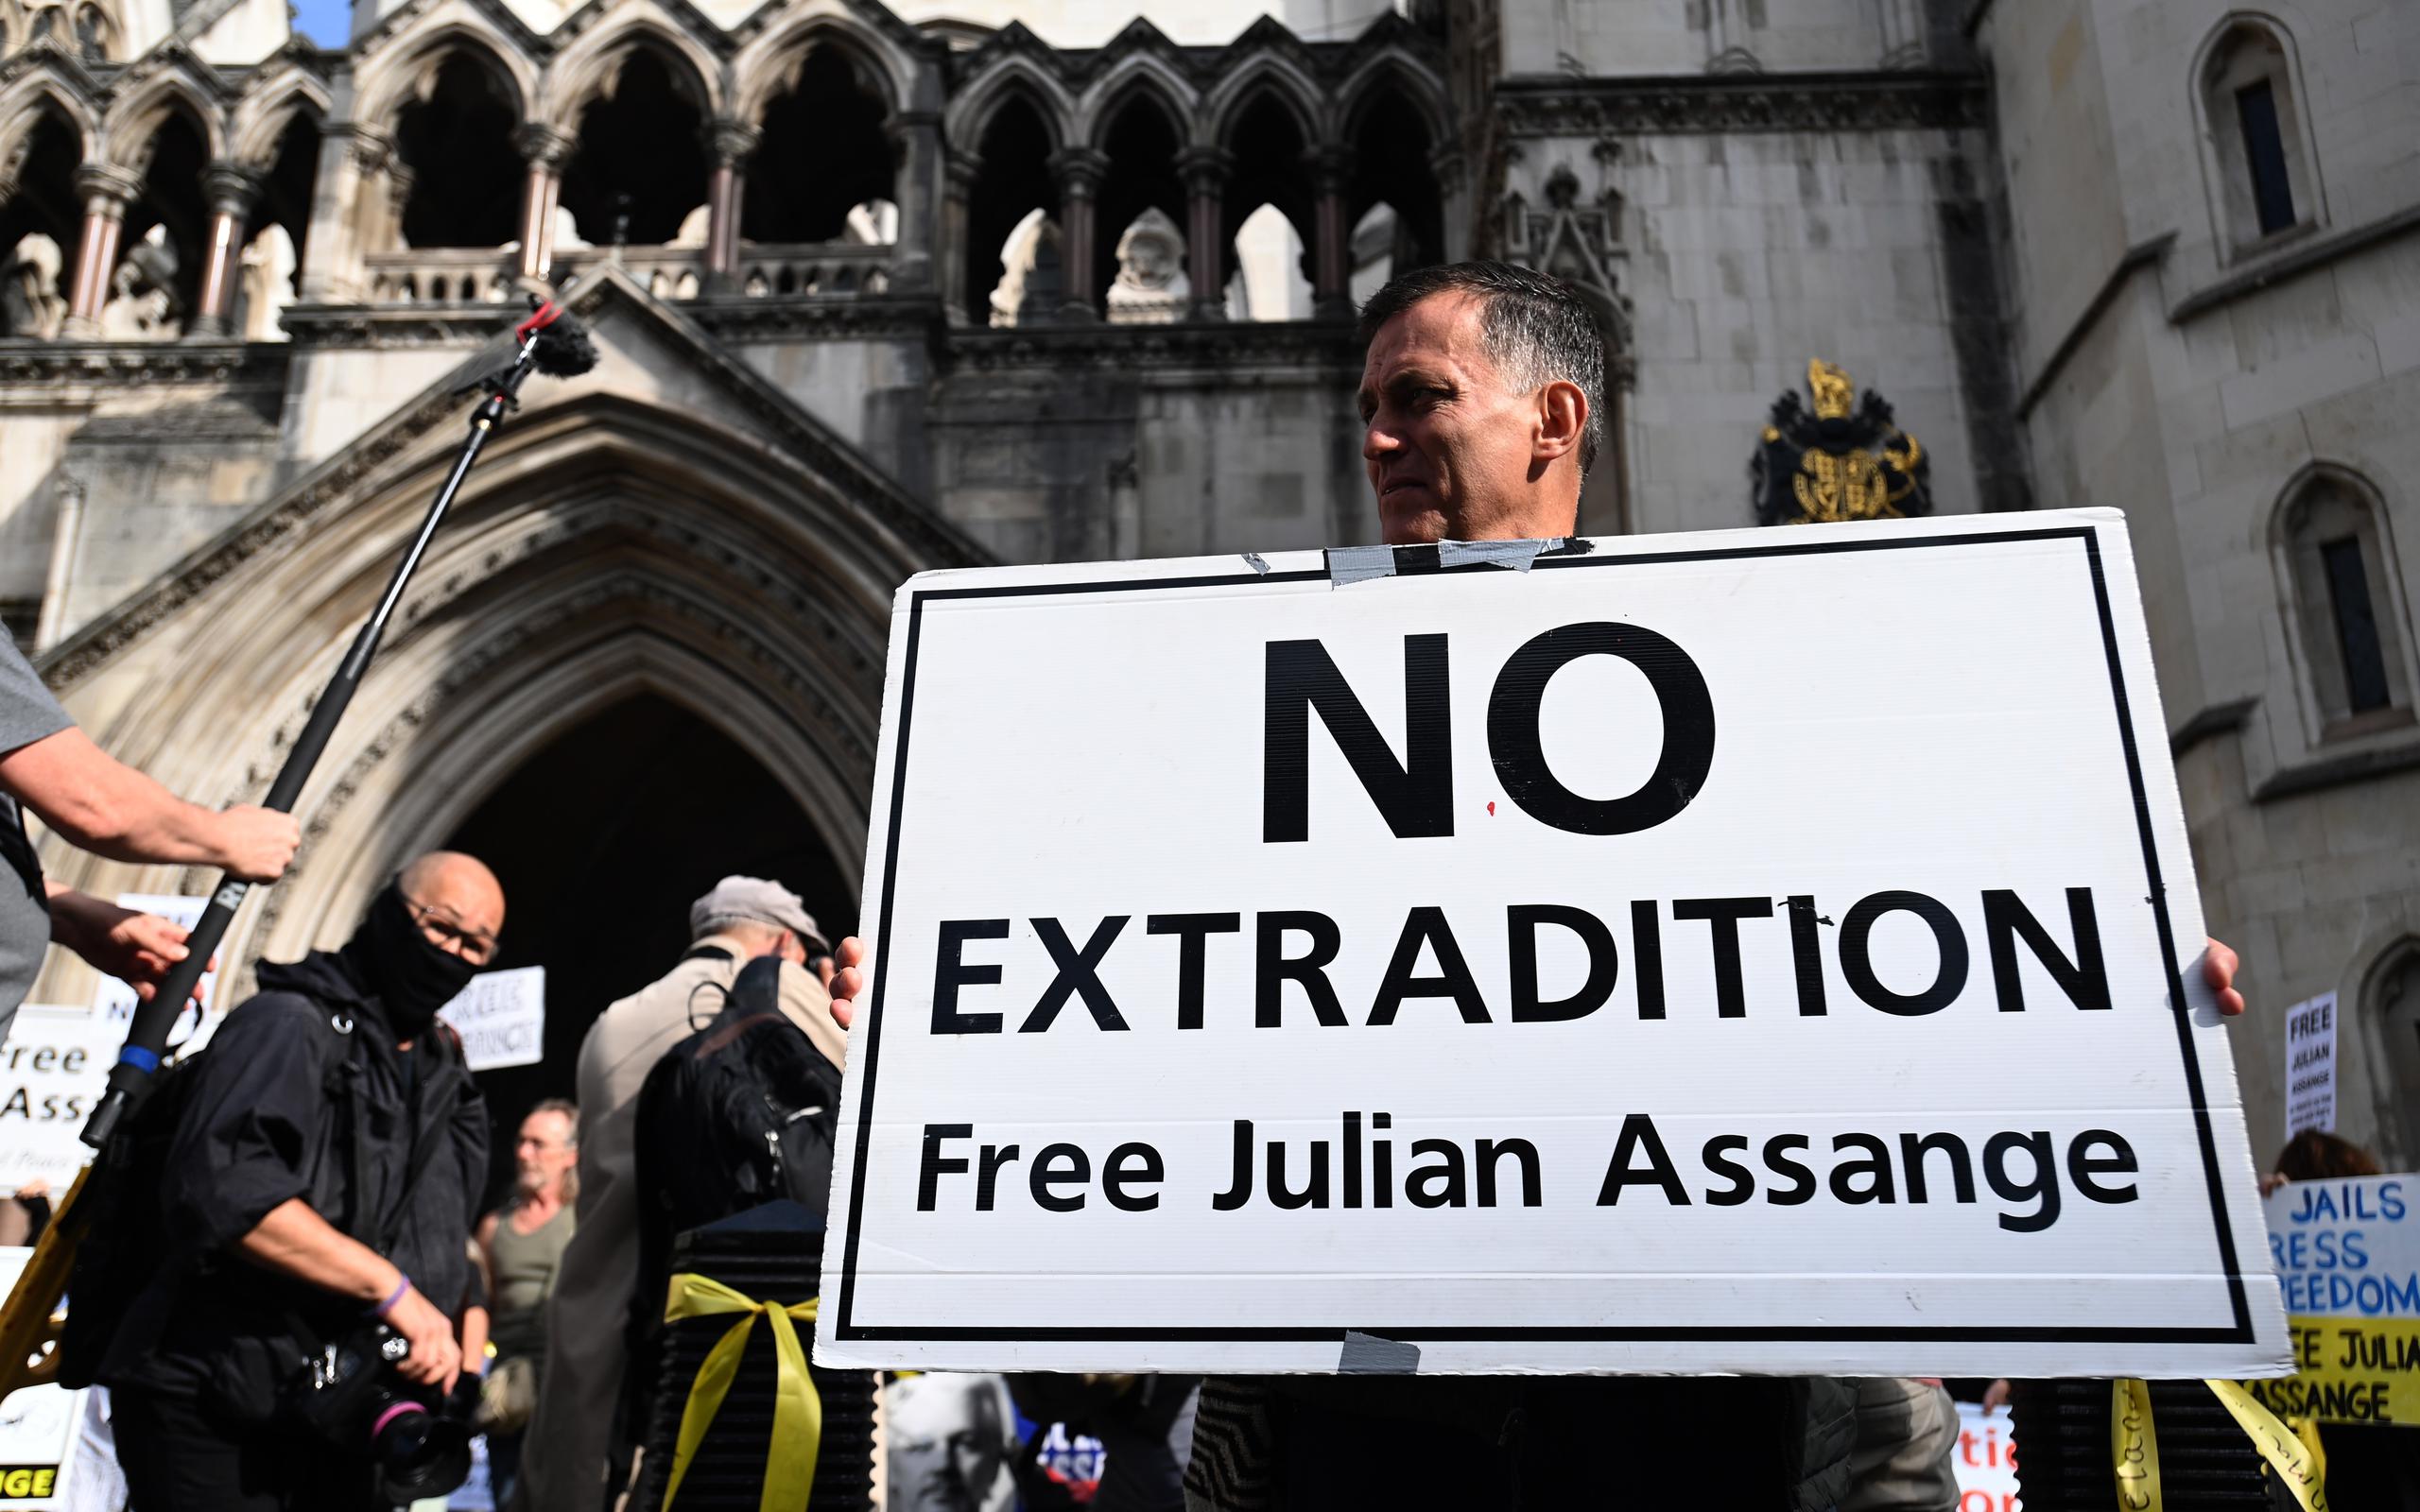 Un centenar de personas se congregó esta mañana a las puertas del Tribunal Superior para defender a Assange ante un caso judicial que ven como una contienda entre la “libertad” y las “mentiras”.